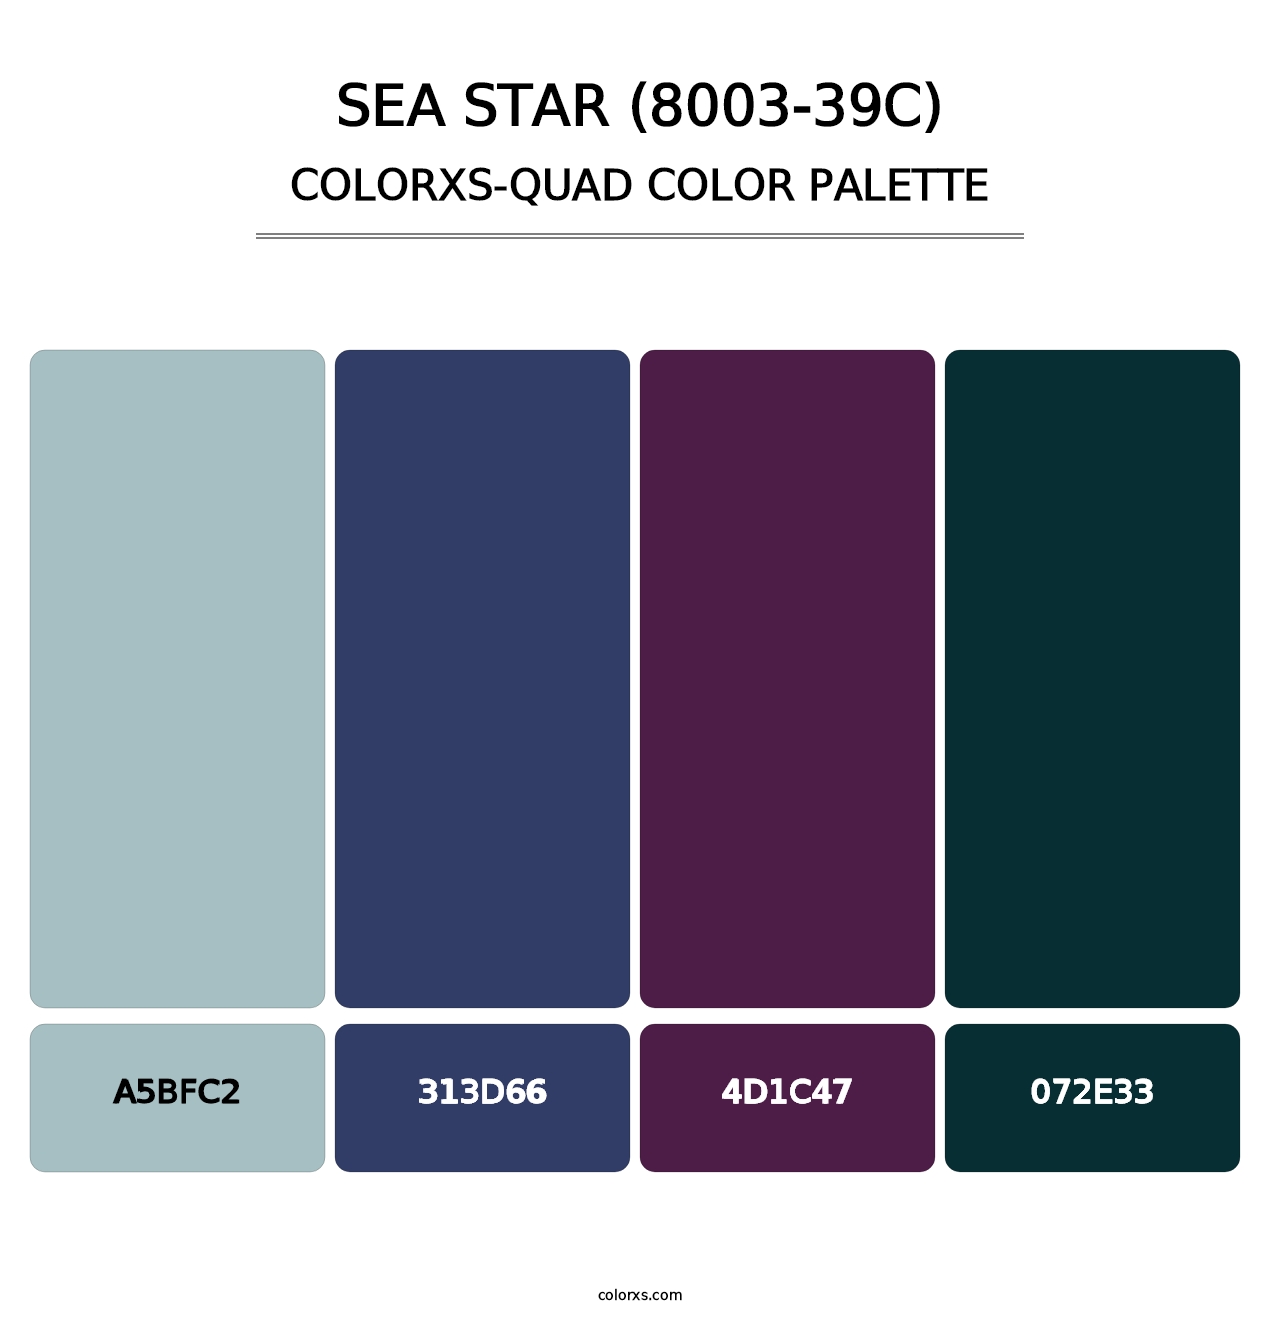 Sea Star (8003-39C) - Colorxs Quad Palette